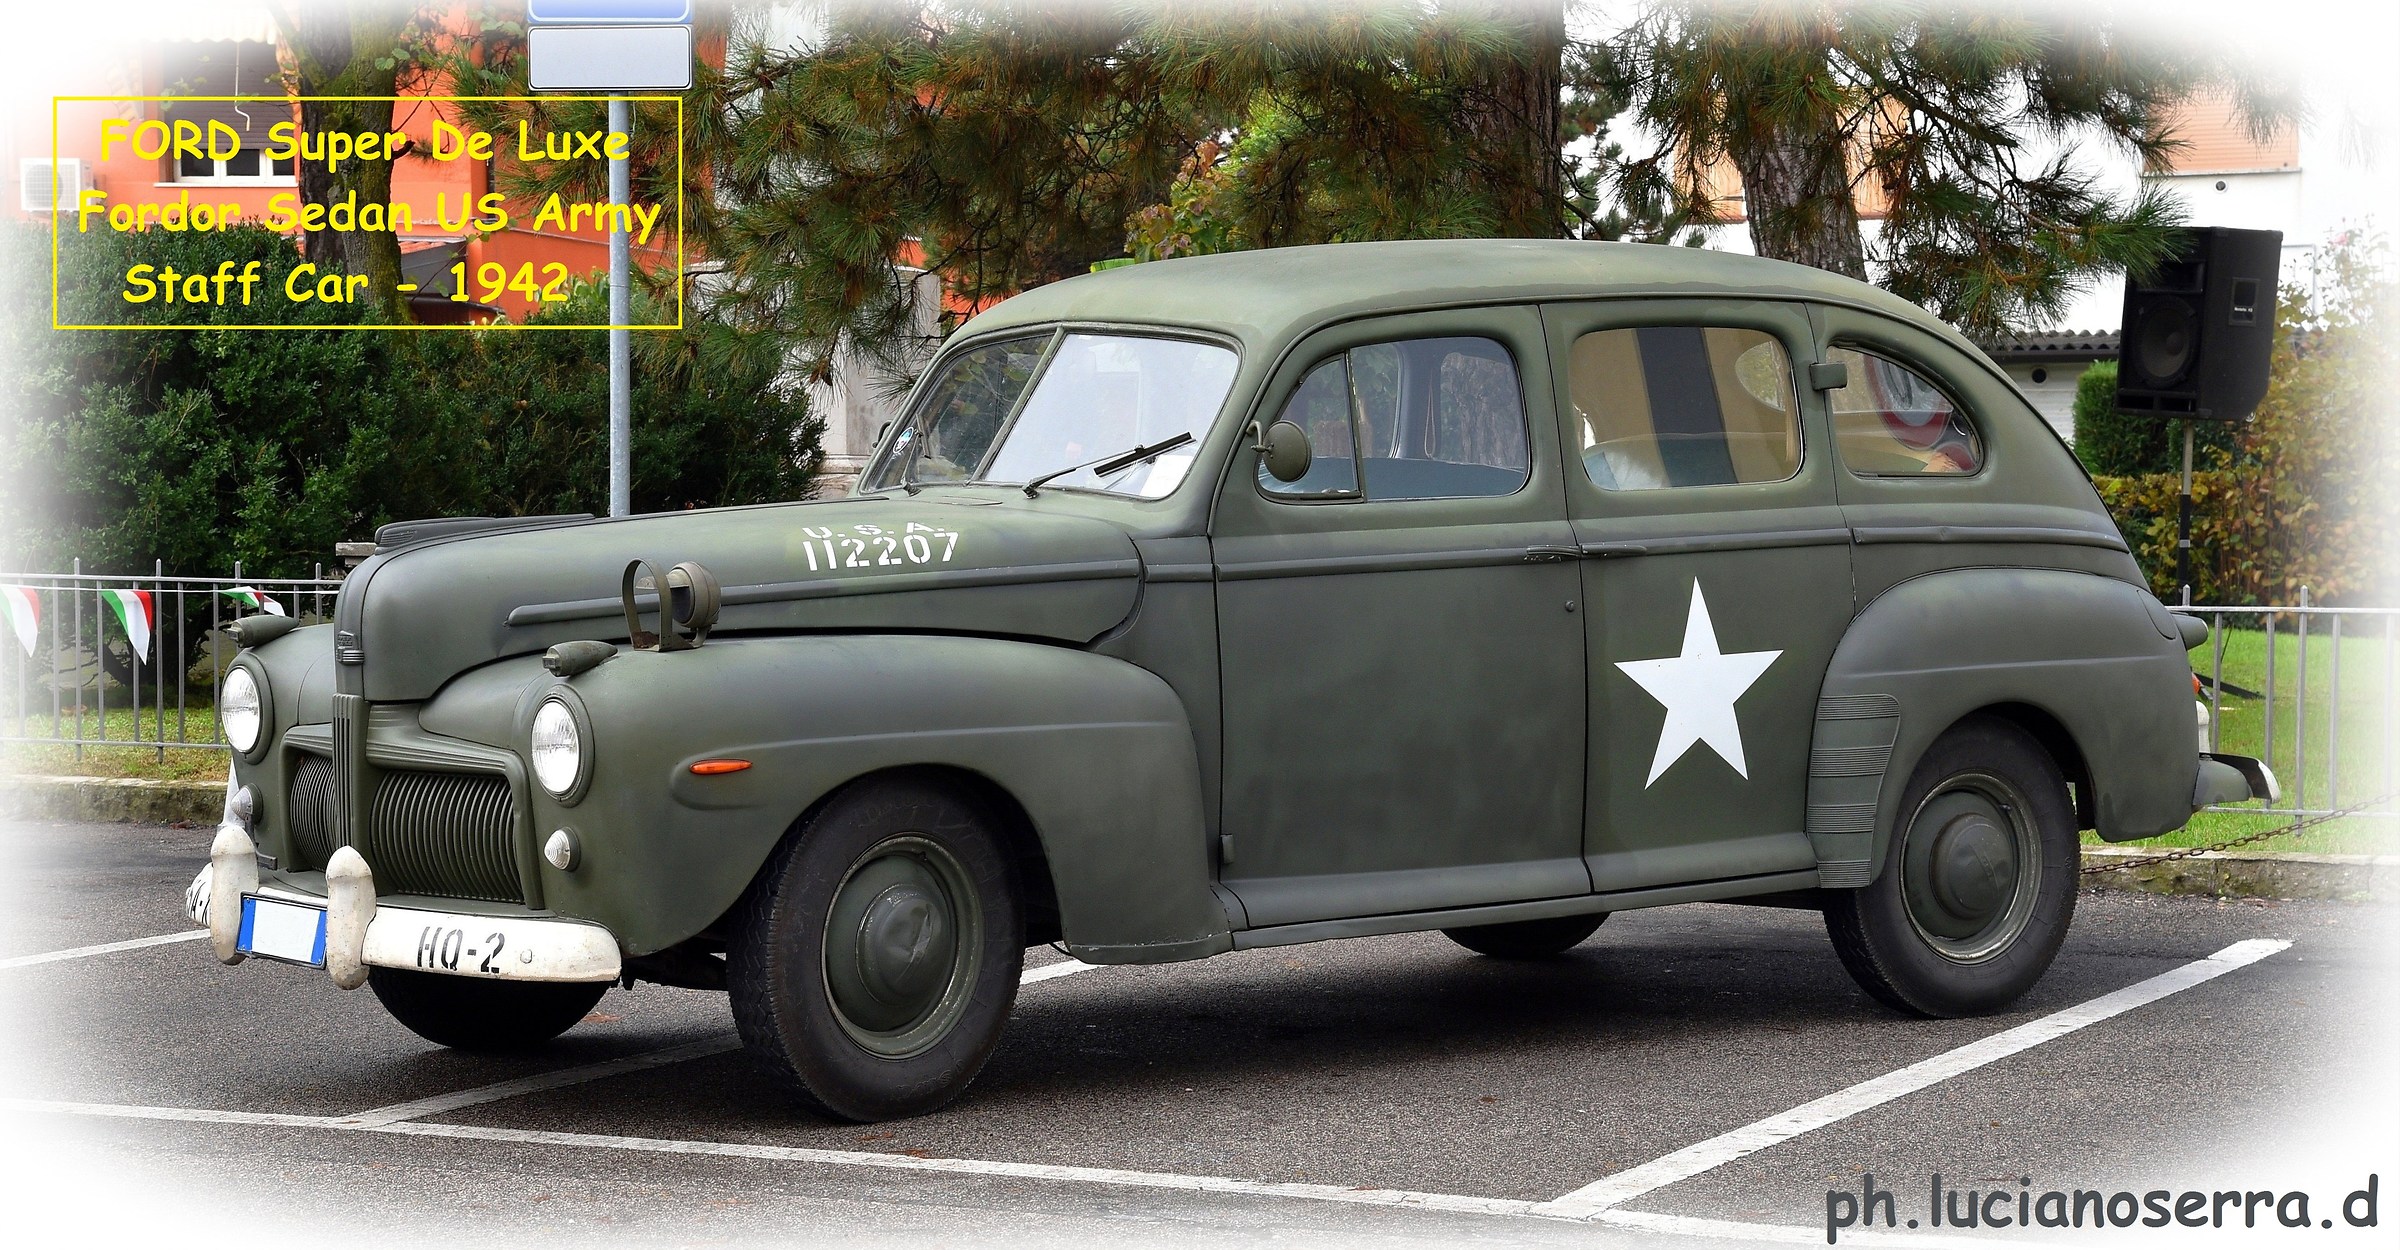 Ford Super De Luxe Fordor Sedan US Army Staff Car -1942...